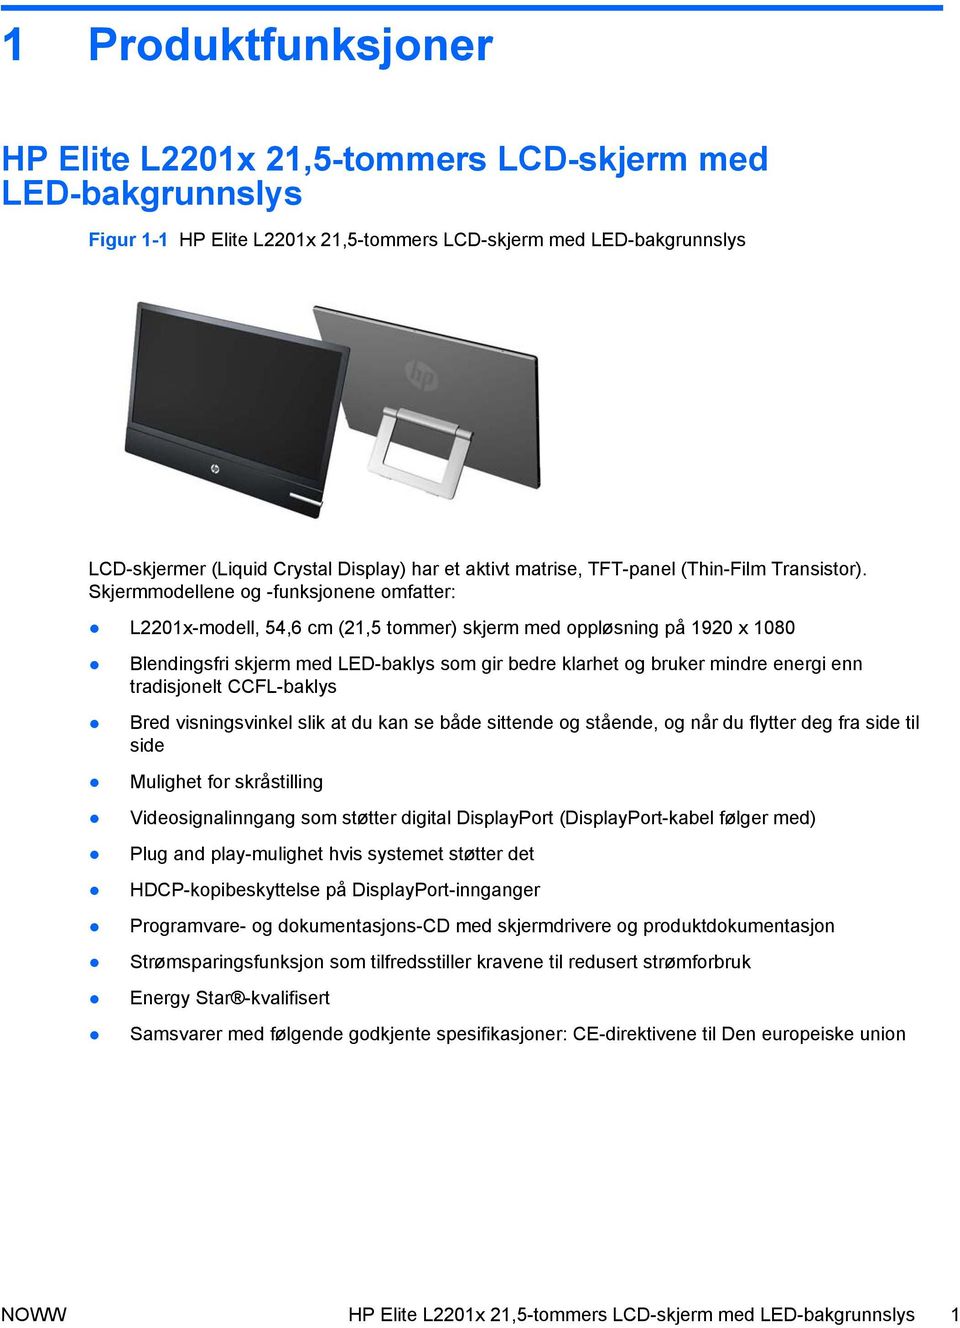 Skjermmodellene og -funksjonene omfatter: L2201x-modell, 54,6 cm (21,5 tommer) skjerm med oppløsning på 1920 x 1080 Blendingsfri skjerm med LED-baklys som gir bedre klarhet og bruker mindre energi